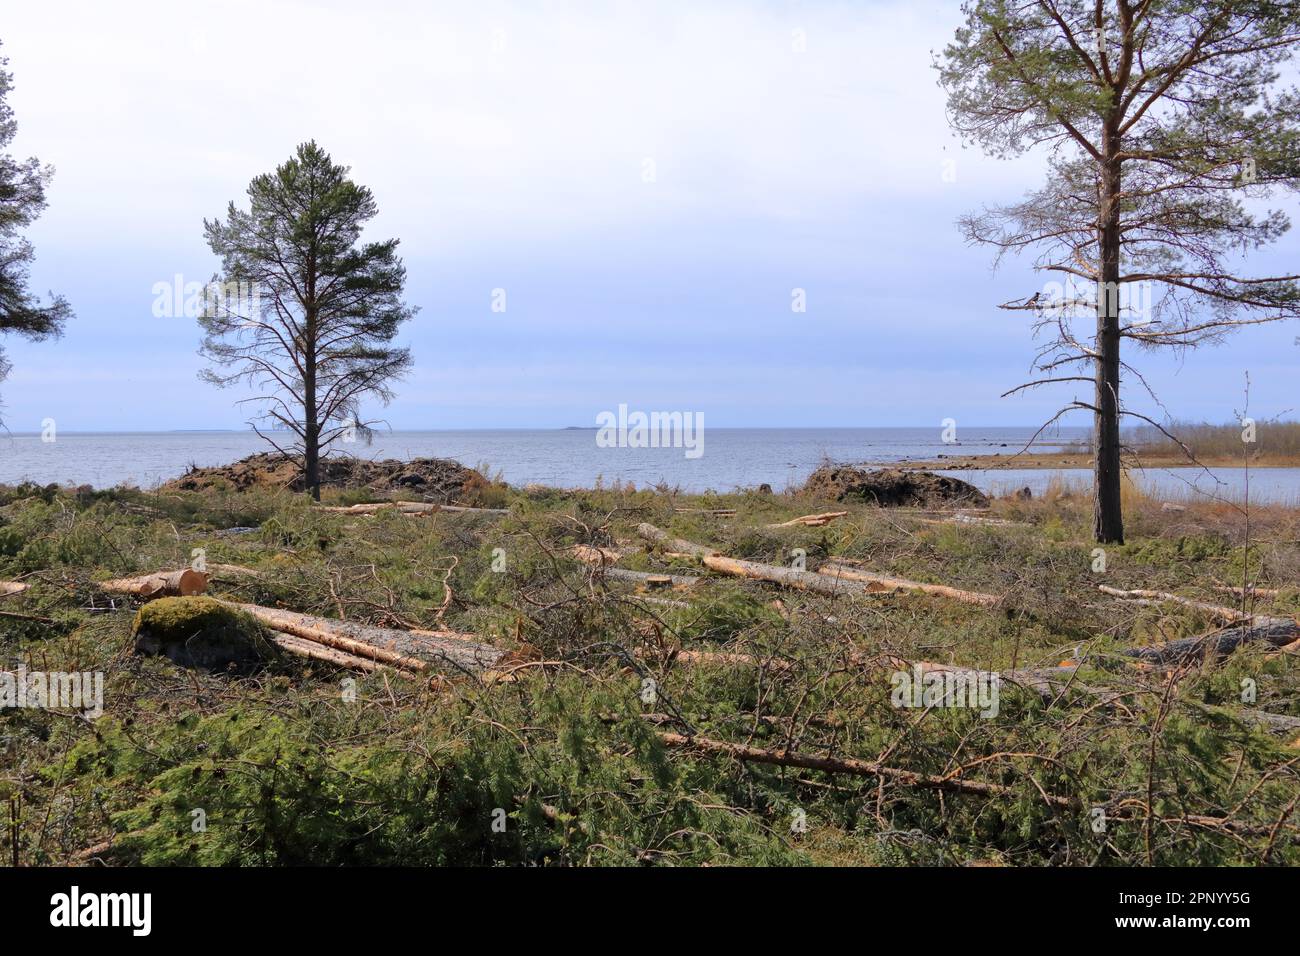 picturesque coastal landscape on the Baltic Sea near Merihelmi in Finland Stock Photo